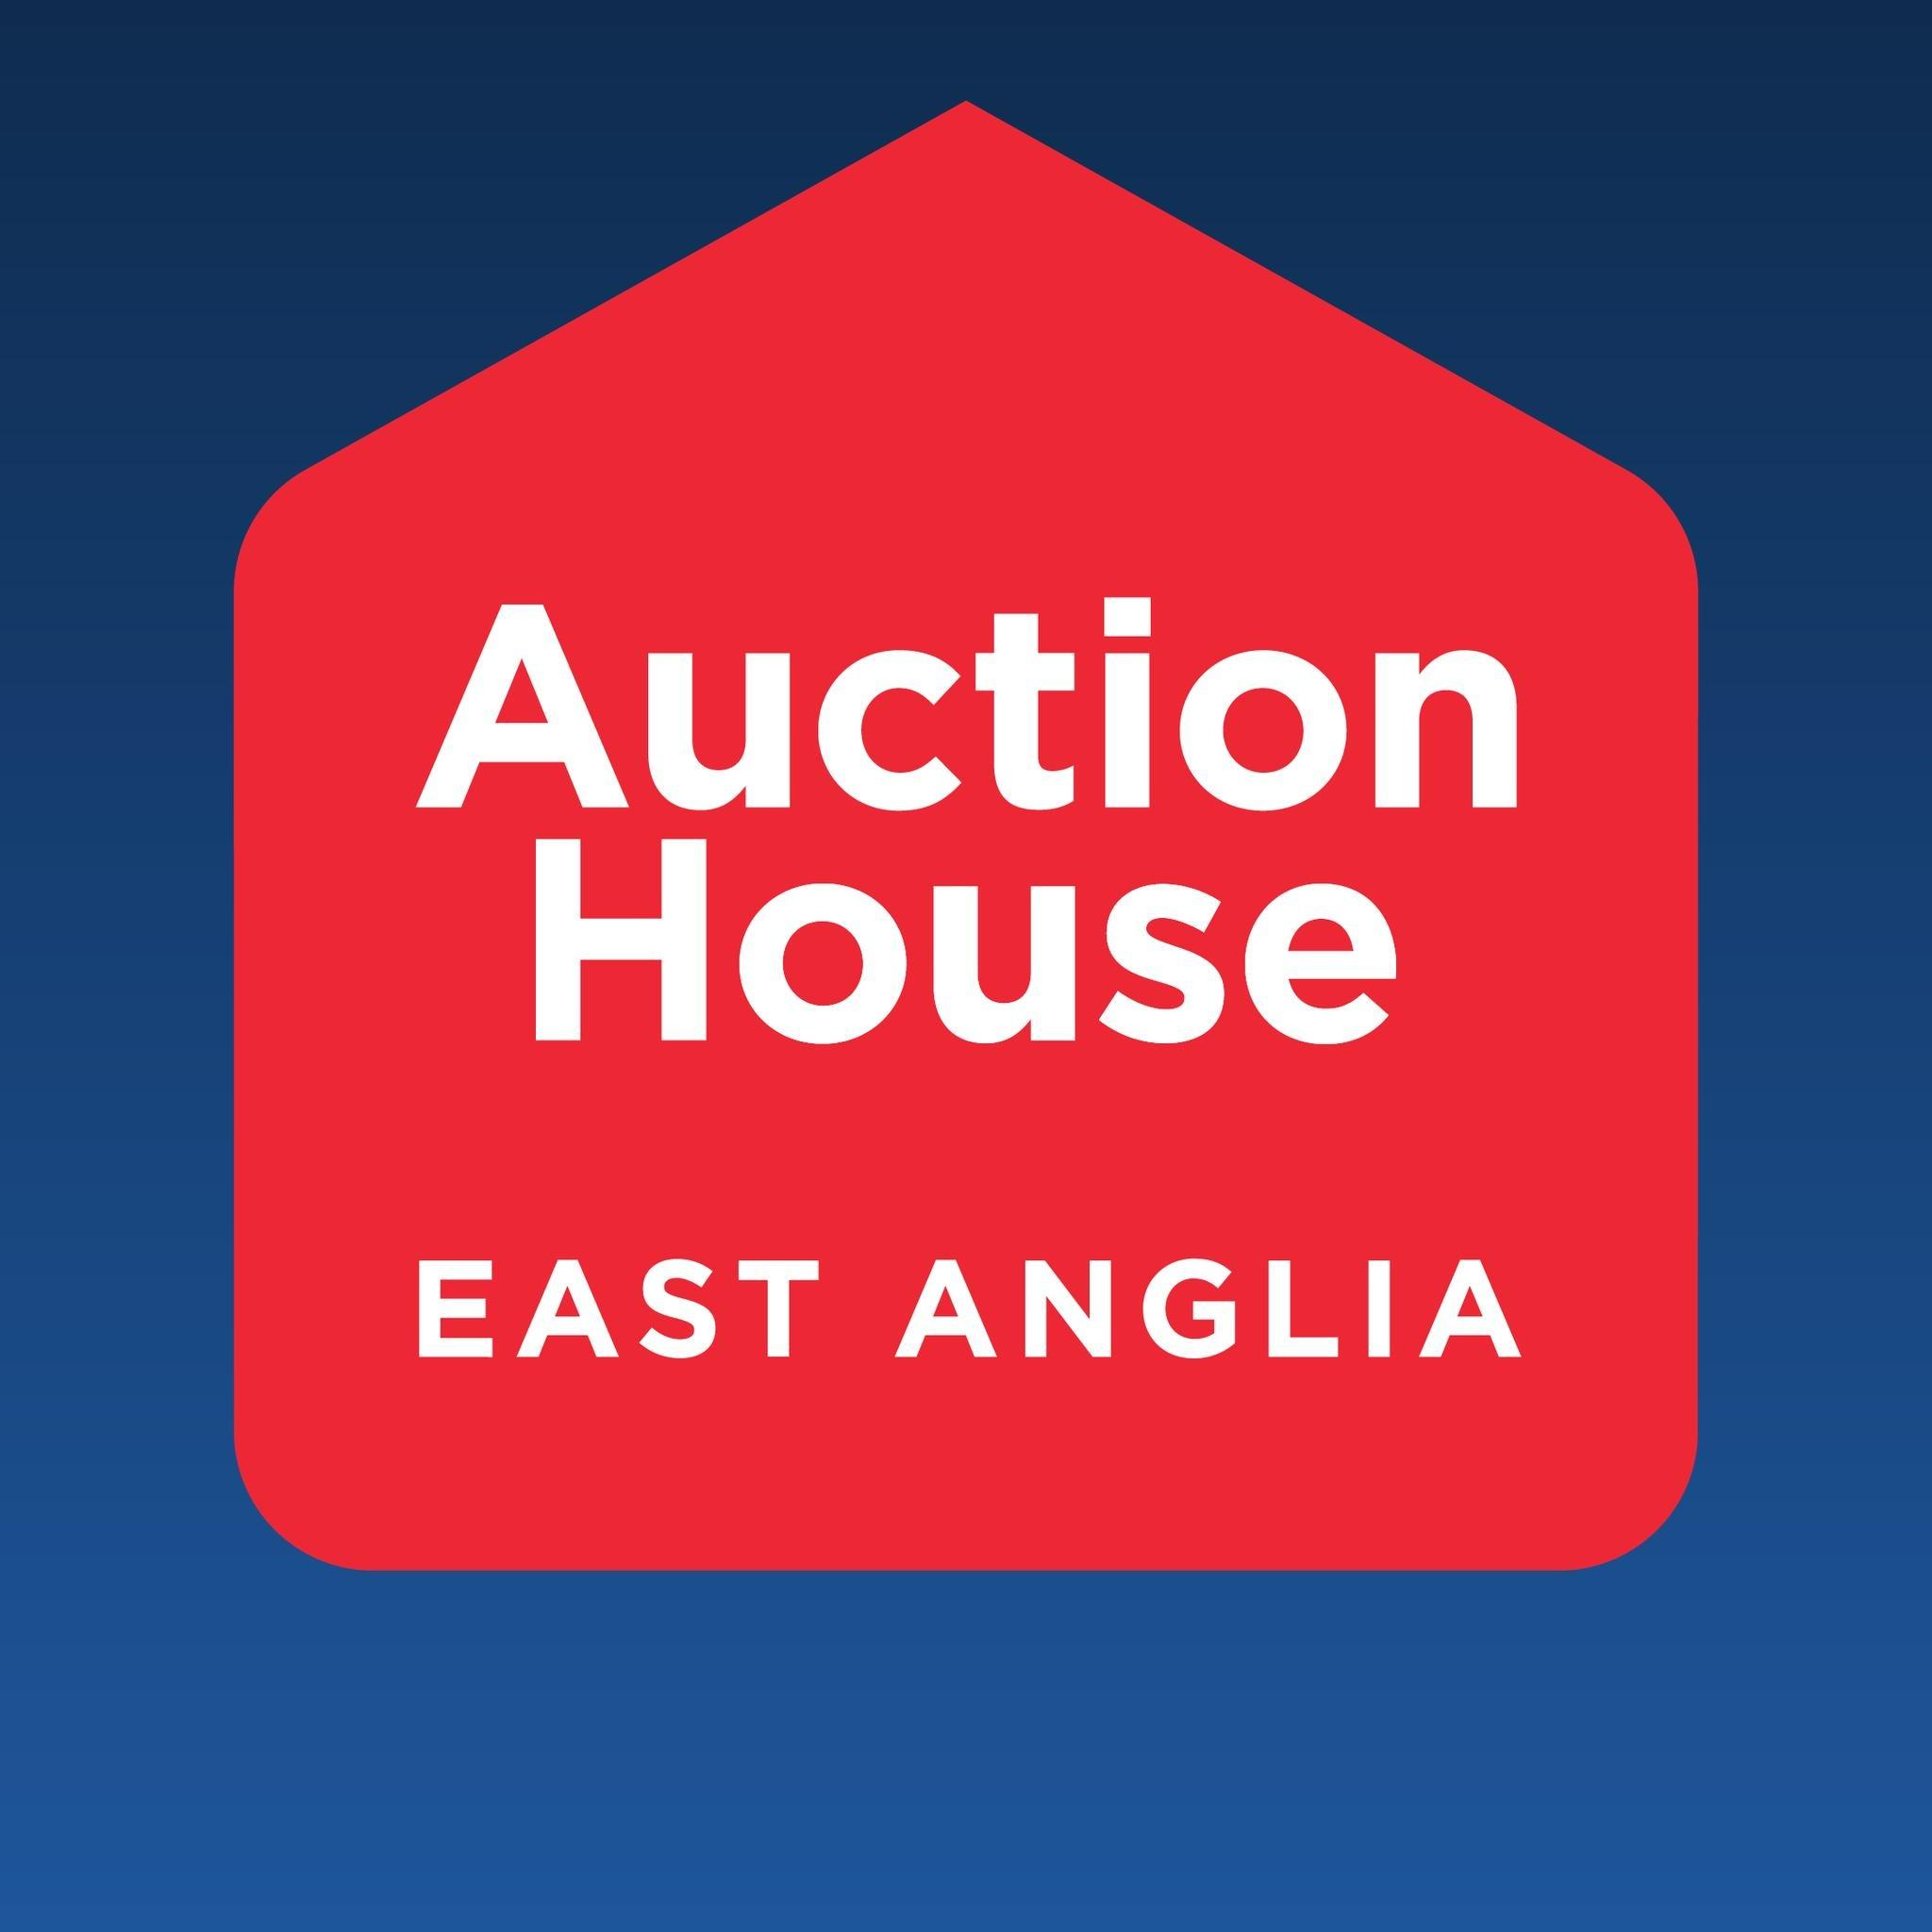 Auction House East Anglia Logo